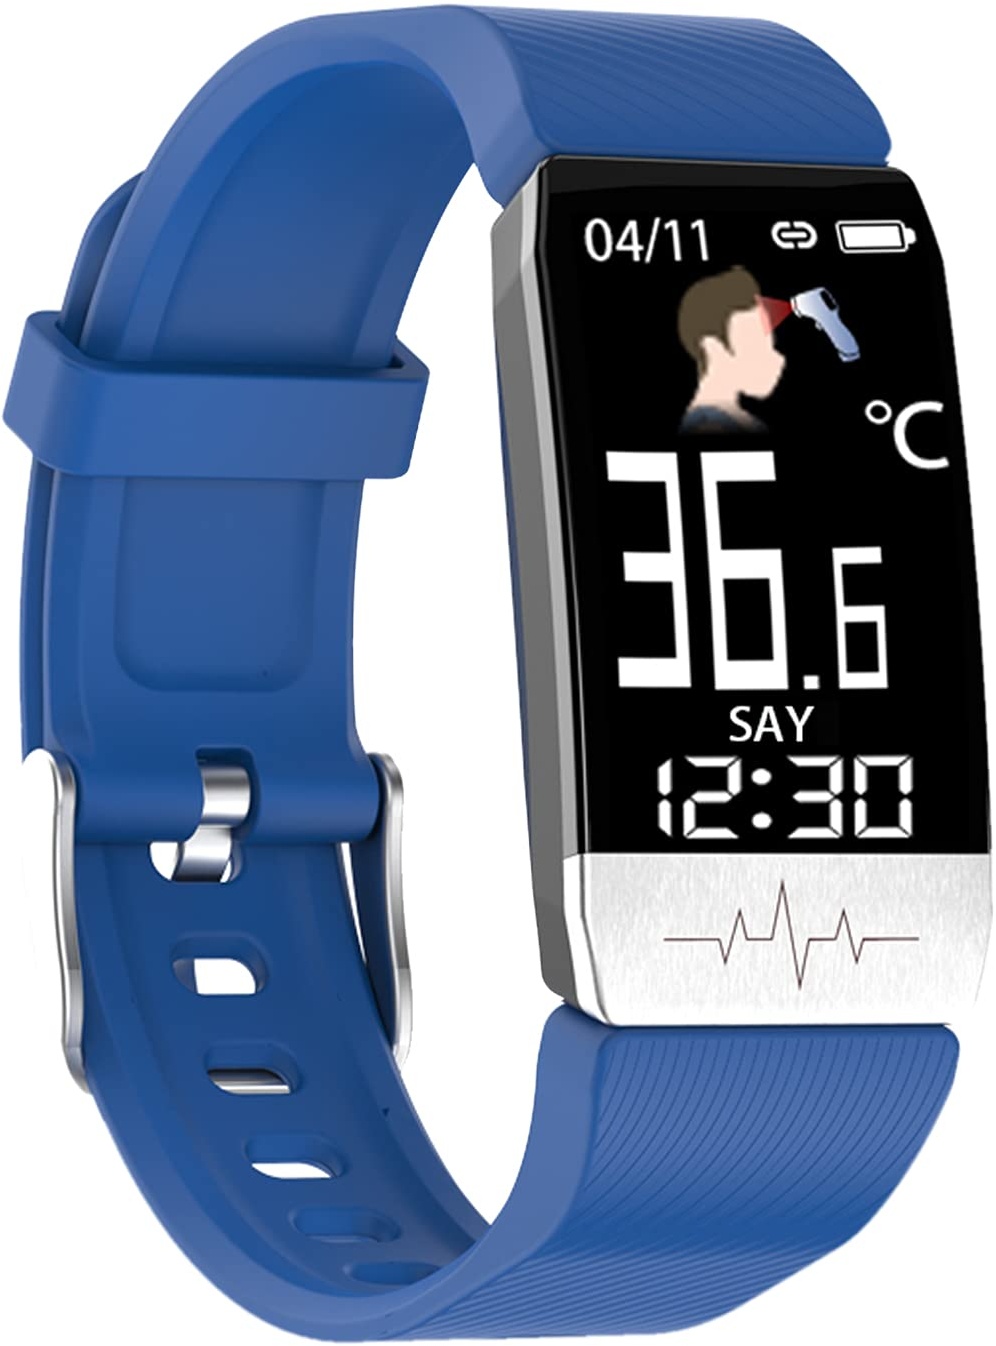 MicLee Damen Herren Fitness Armband EKG PPG Blutdruck Monitor Smartwatch Fitness Tracker Farbbildschirm Fitness Uhr Wasserdicht IP67 Aktivitätstracker Viele Trainingsmodi Uhr Schrittzähler Sportuhr